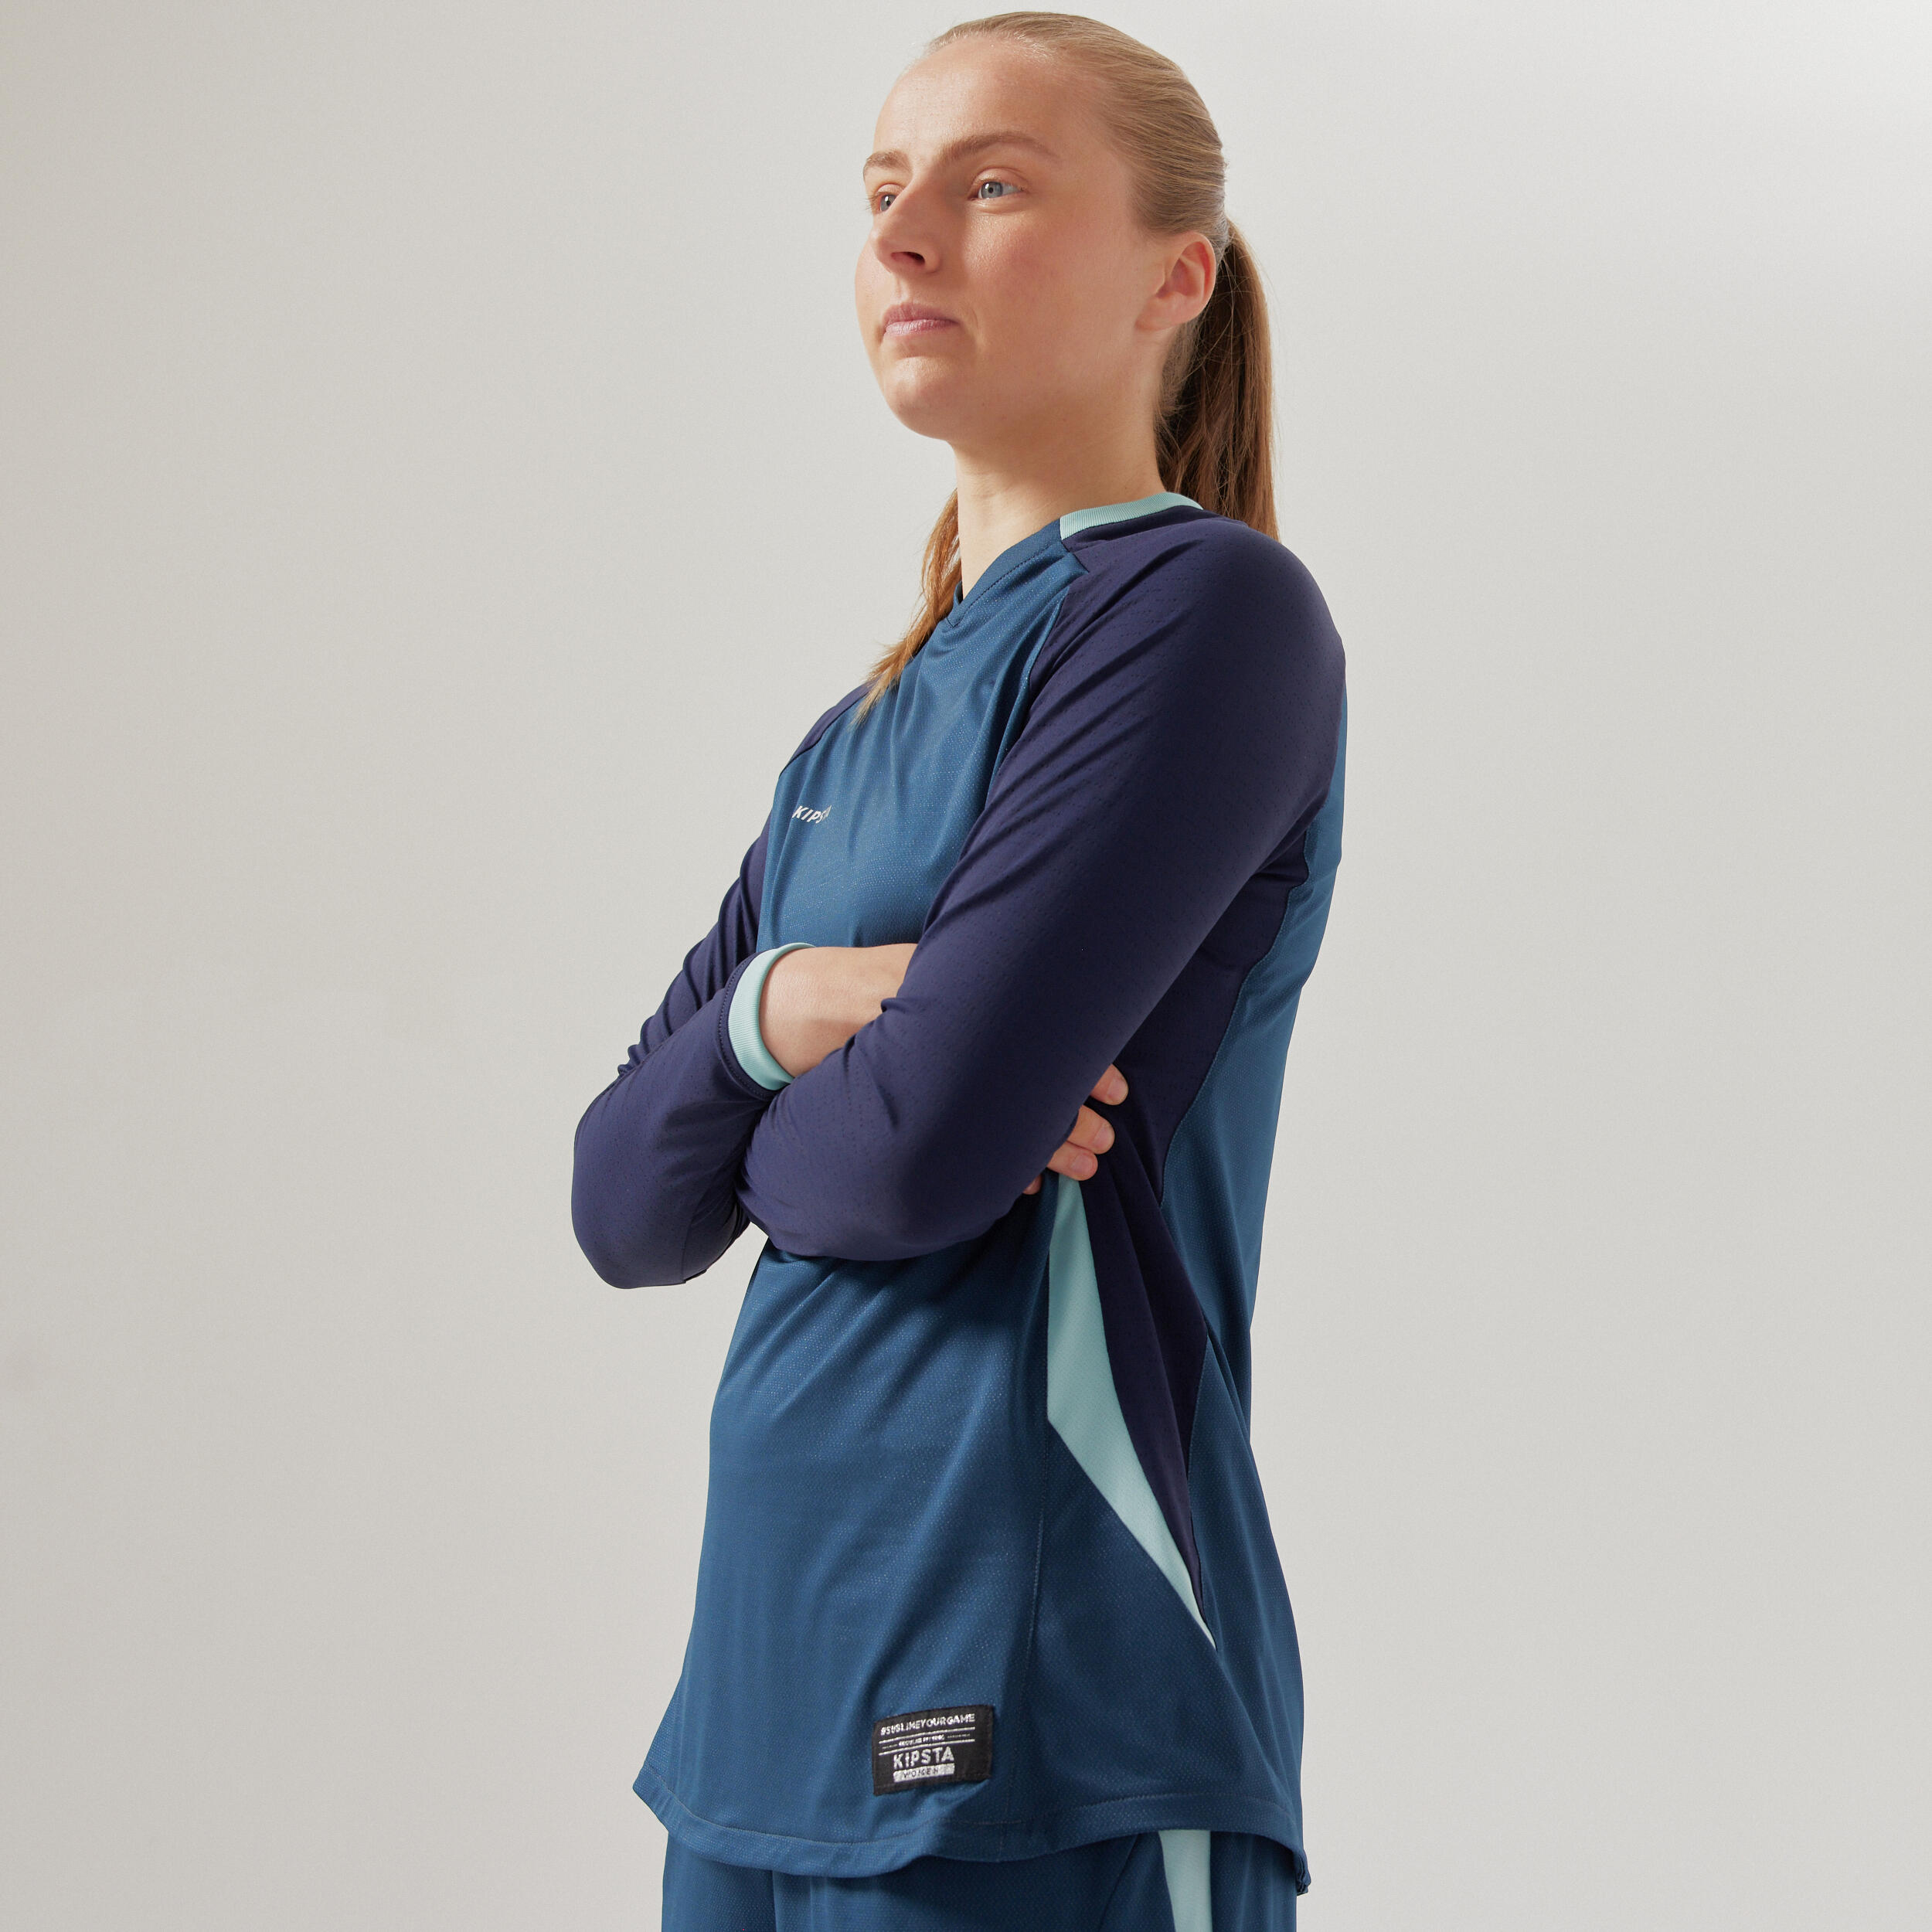 Women's Long-Sleeved Slim-Cut Football Shirt - Blue 8/8